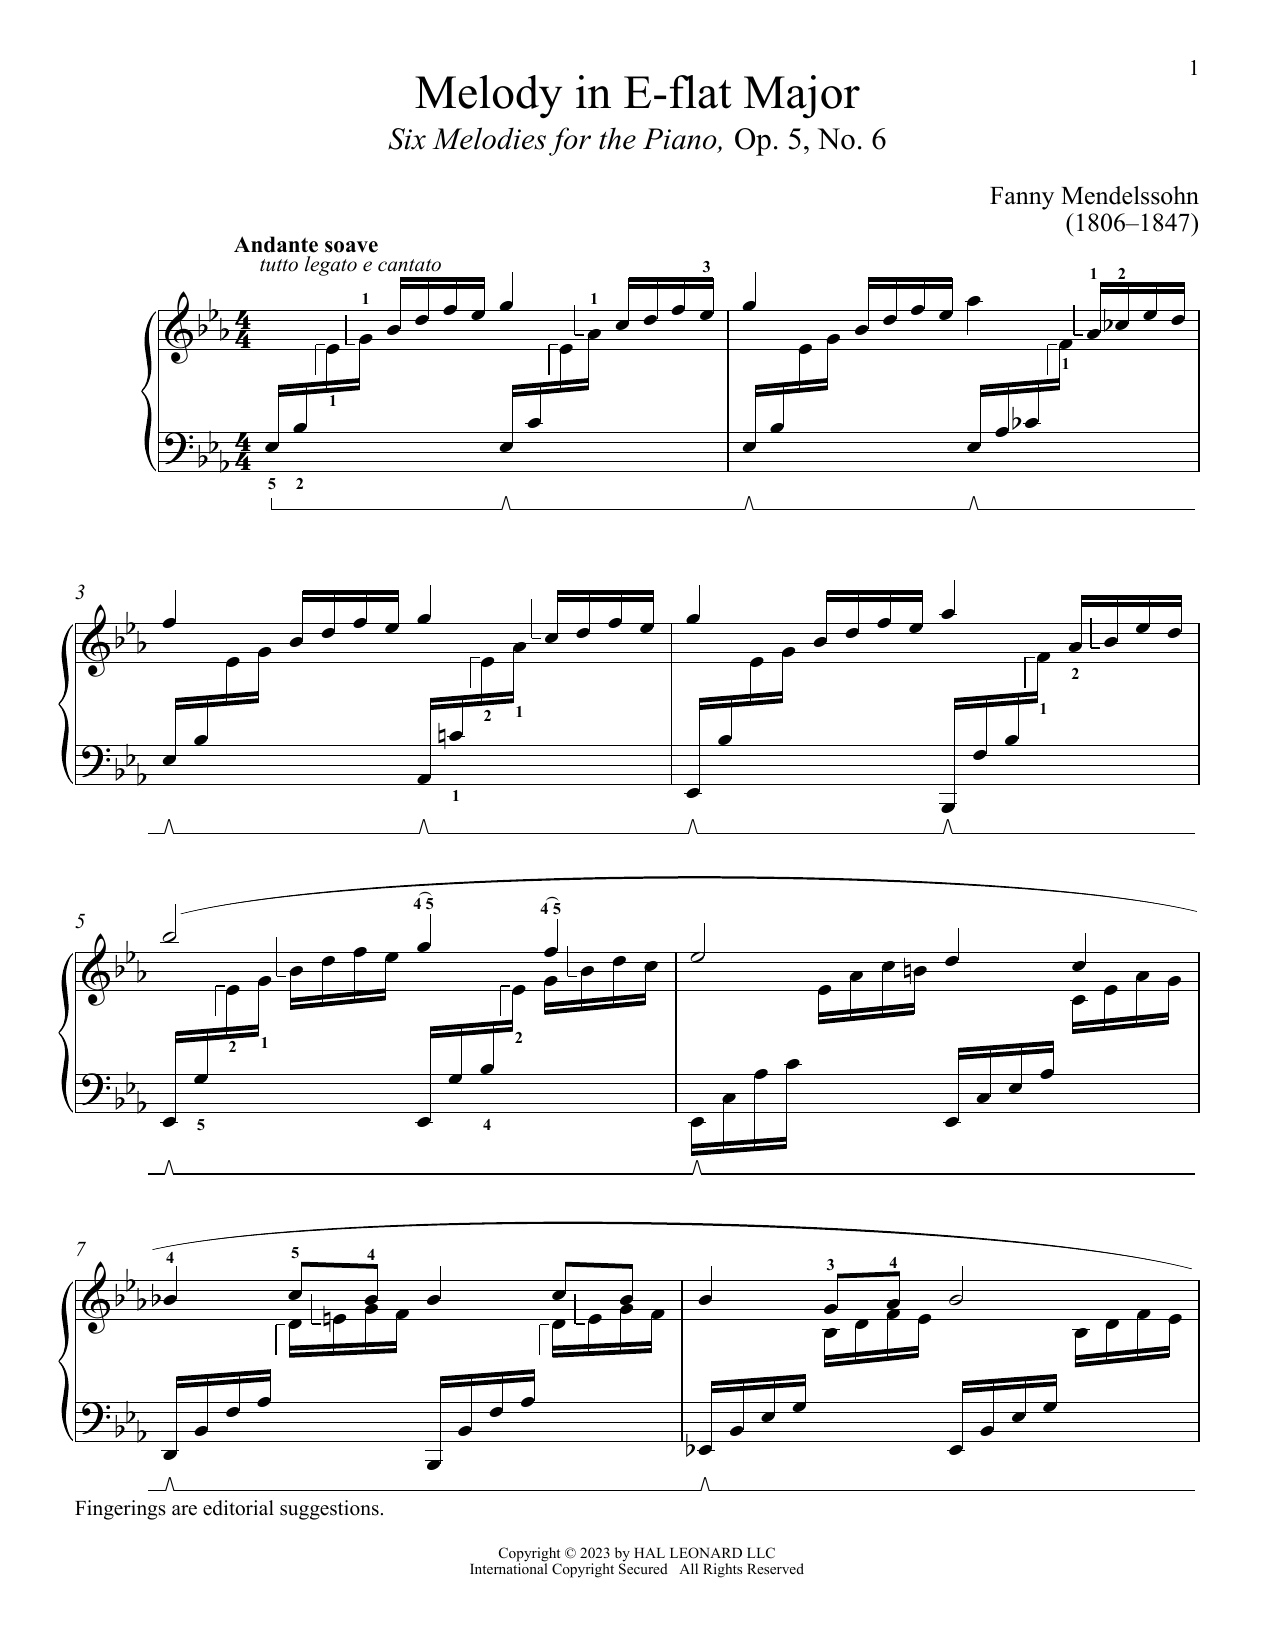 Download Fanny Mendelssohn Andante soave Sheet Music